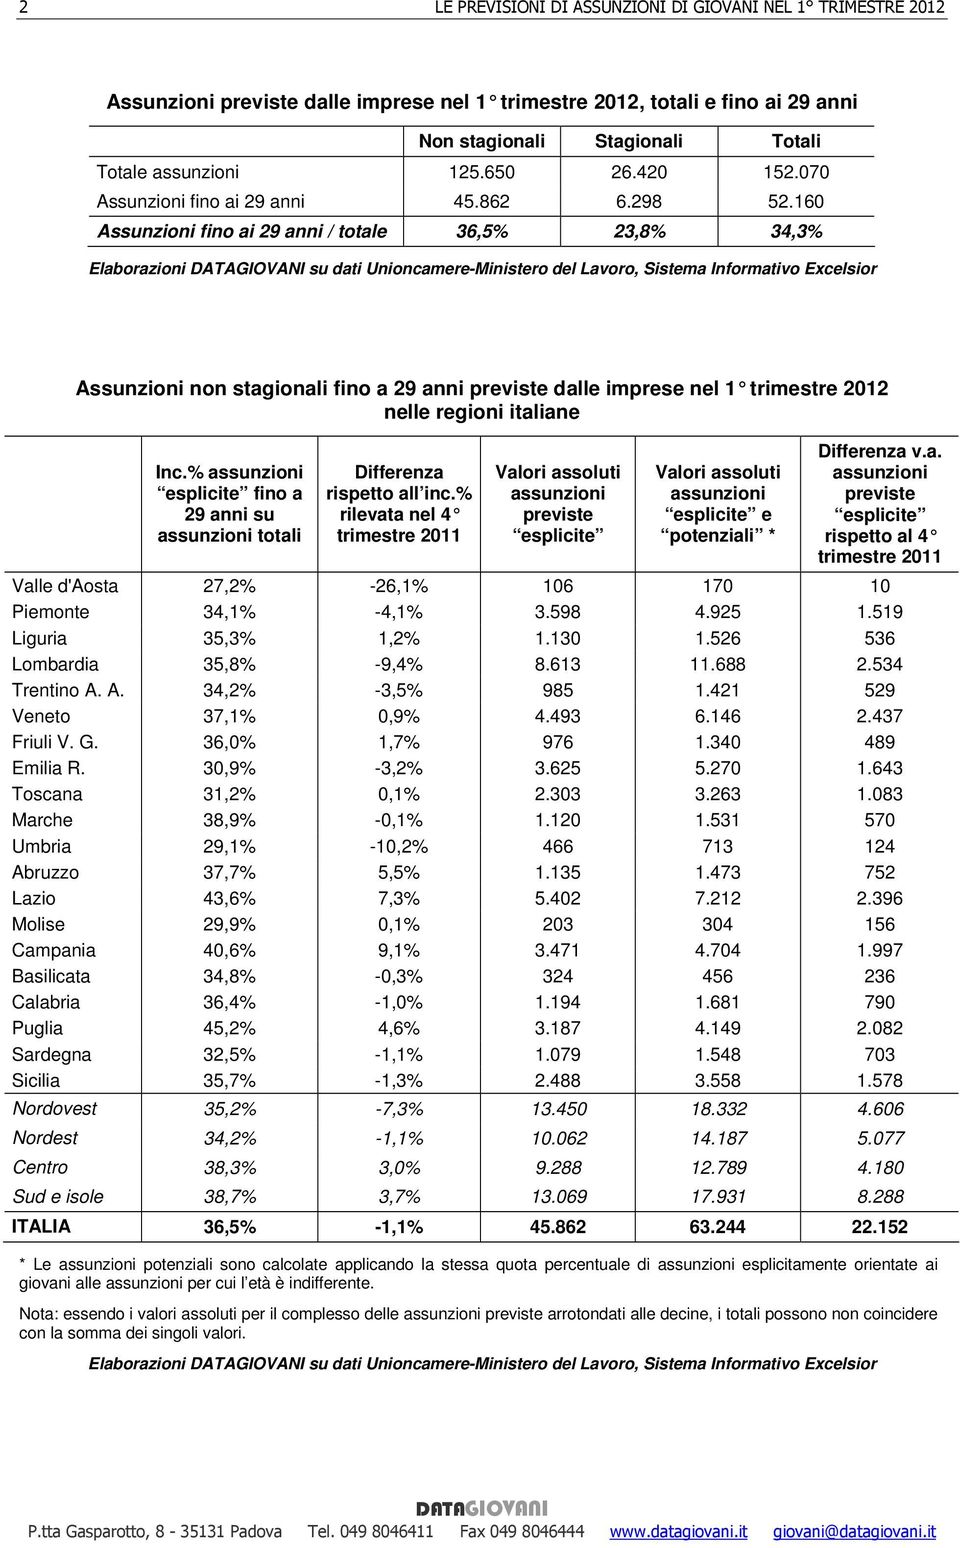 2012 nelle regioni italiane Inc.% su totali Differenza rispetto all inc.% rilevata nel 4 trimestre 2011 e Differenza v.a. rispetto al 4 trimestre 2011 Valle d'aosta 27,2% -26,1% 106 170 10 Piemonte 34,1% -4,1% 3.